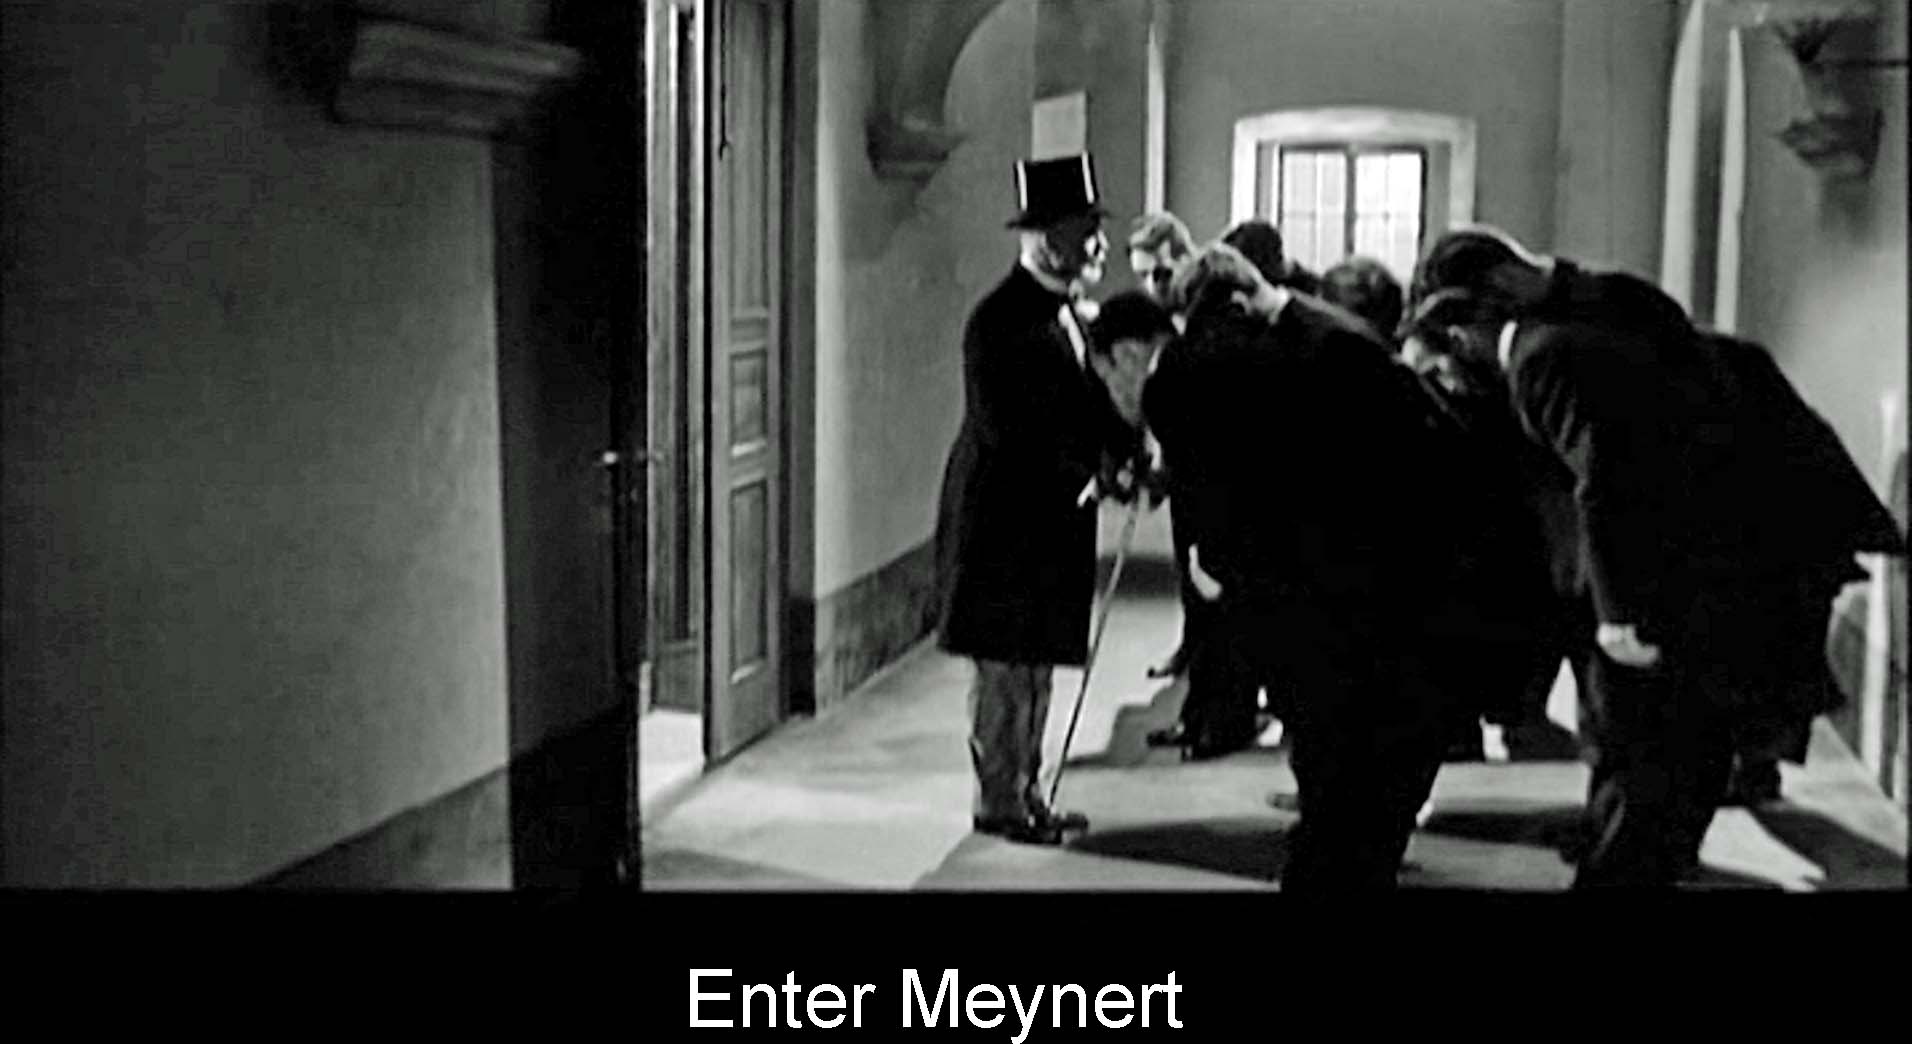 Enter Meynert